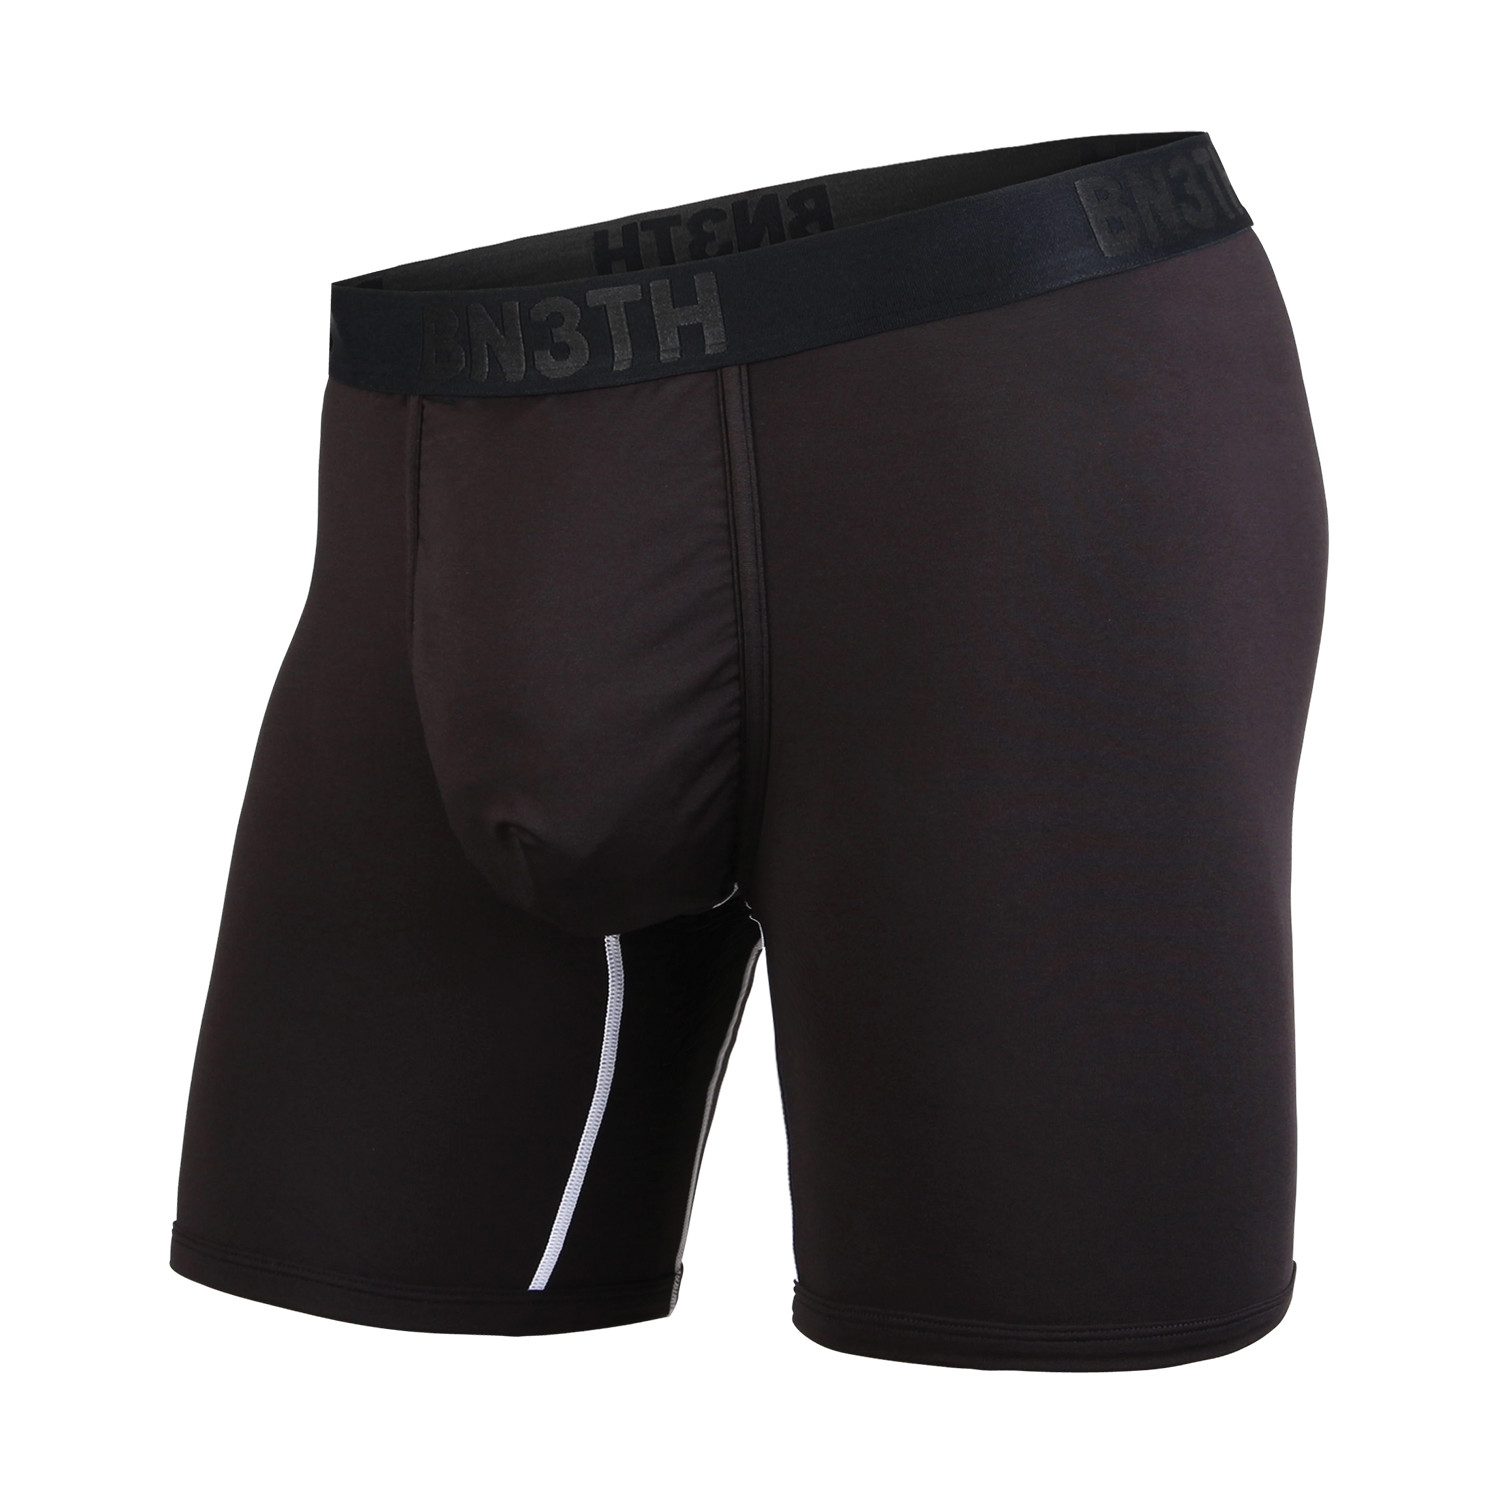 Pro Boxer Brief // Black + White (XS) - BN3TH Underwear - Touch of Modern